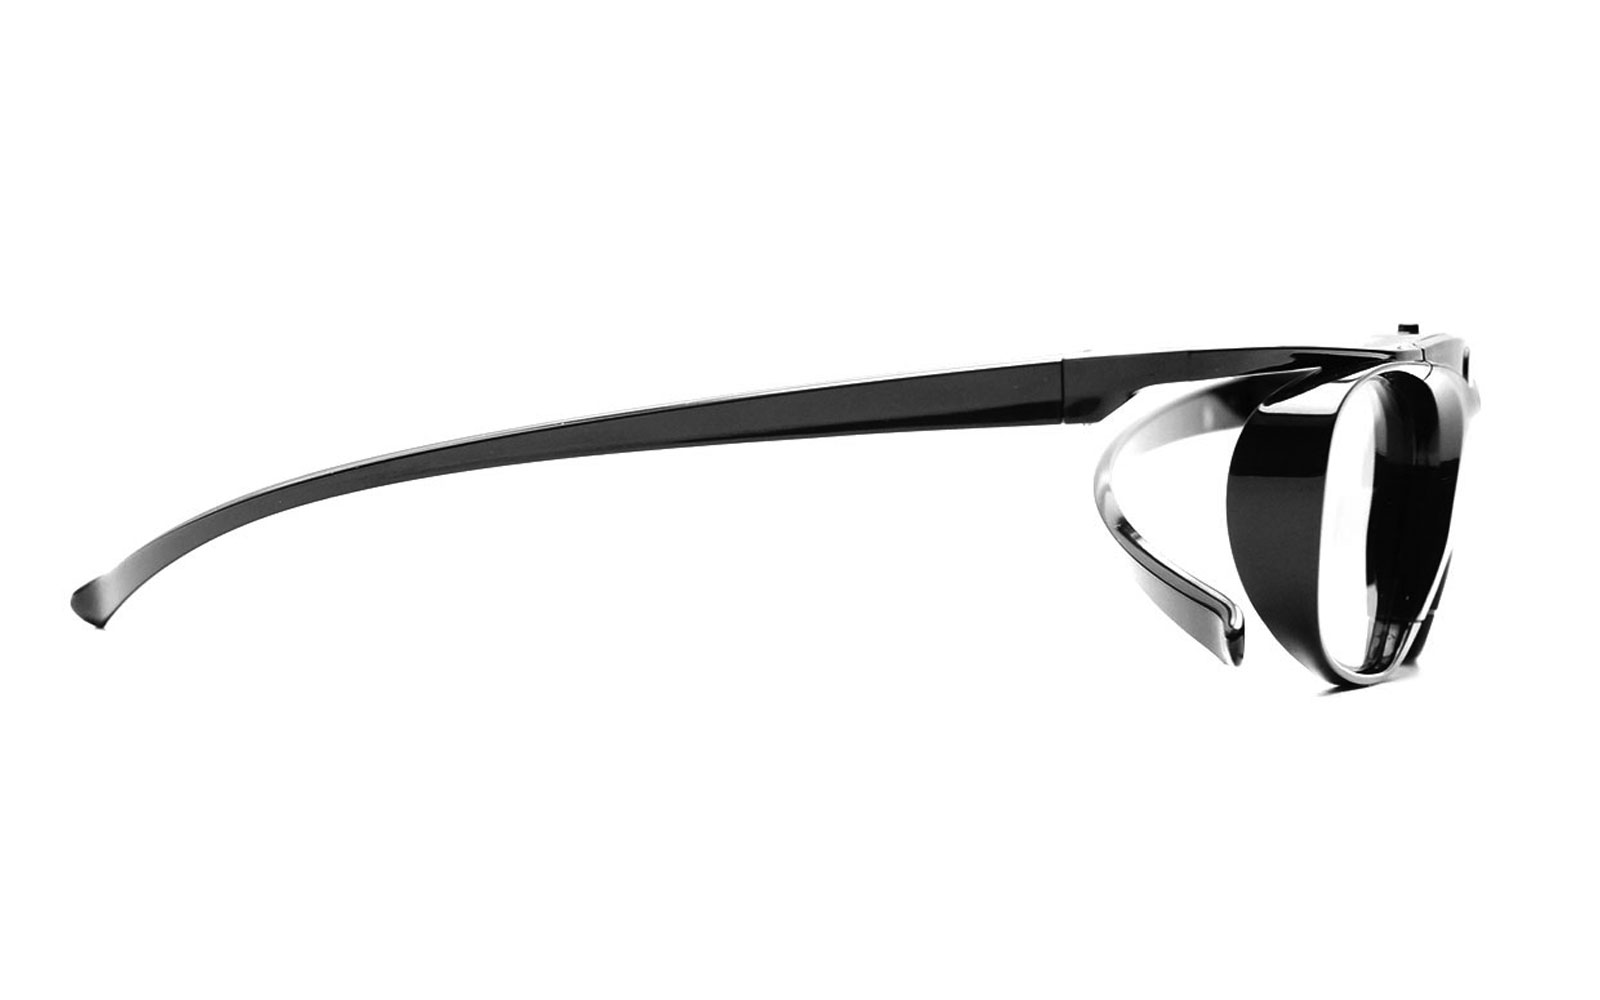 / Epson, BT Sony Heaven RF HI-SHOCK Black Brille aktive für 3D 3D Brille Beamer 3D